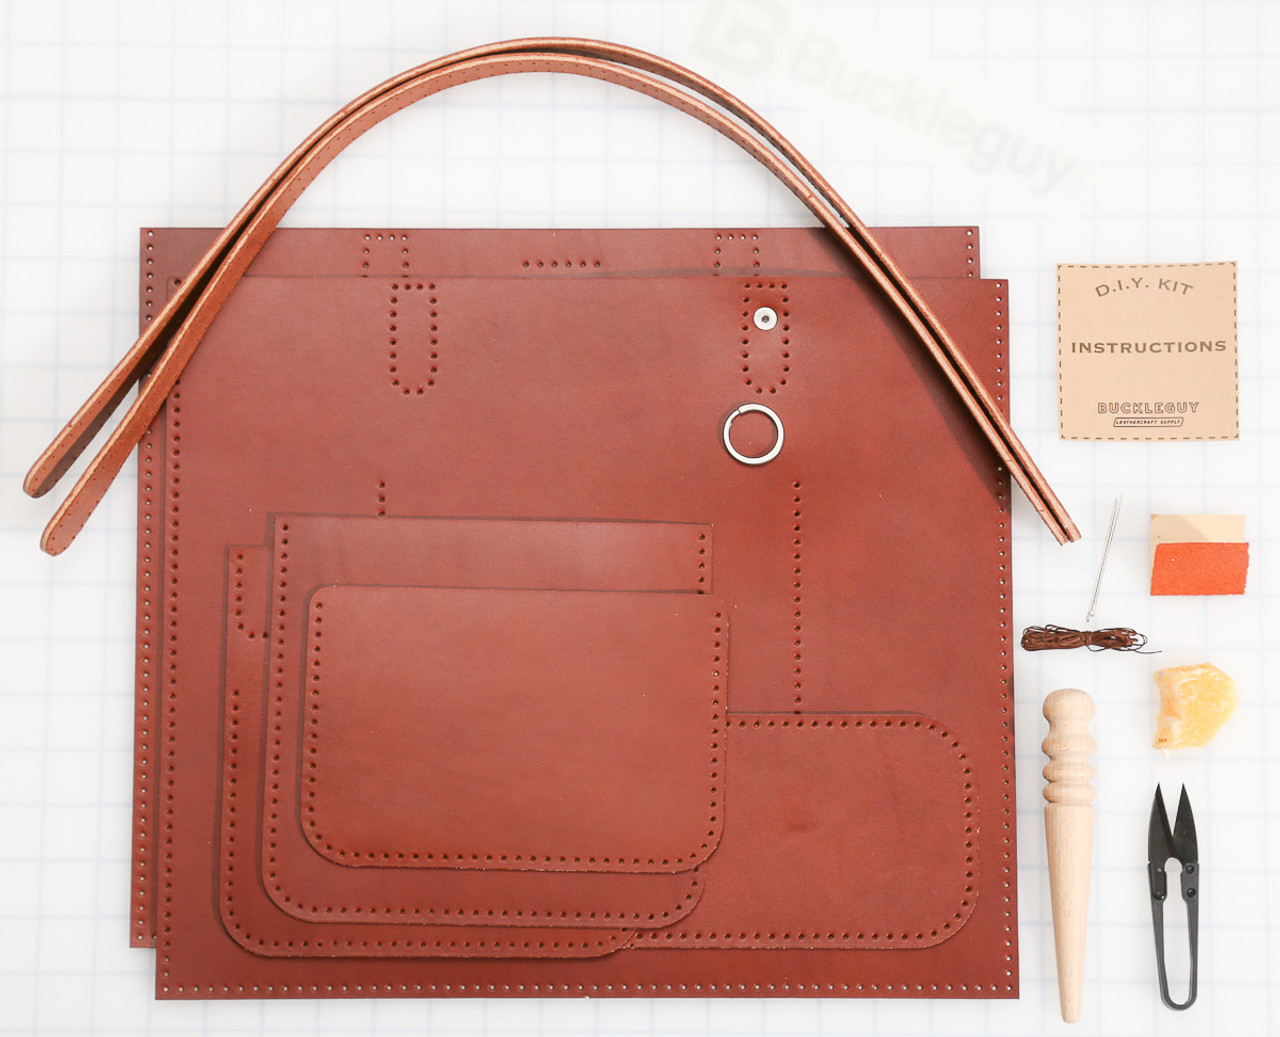 Real Leather Mini Tote Bag DIY Kit  DIY Tote Bag Making Kits – POPSEWING®